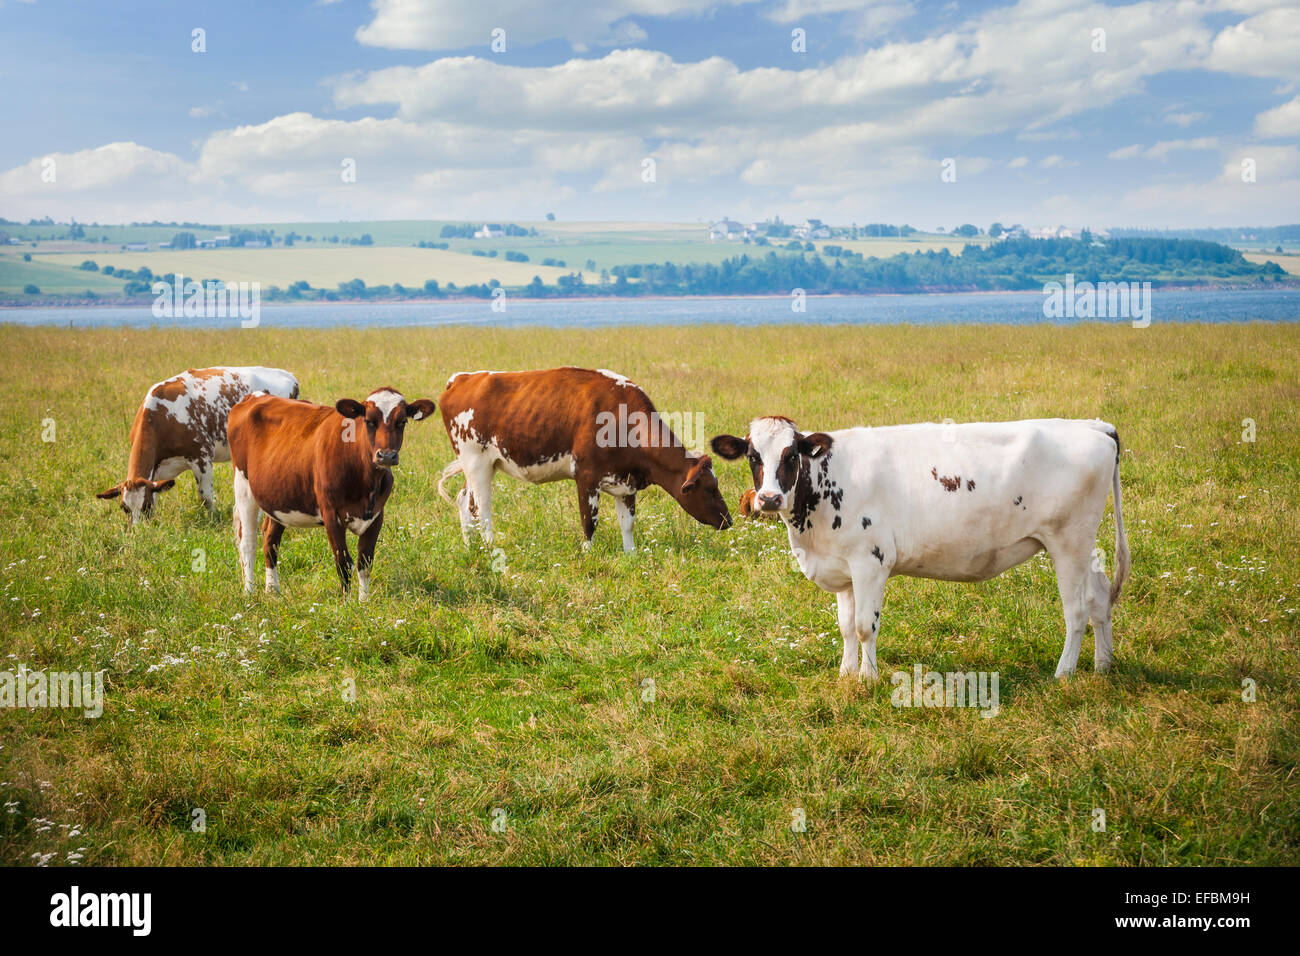 Troupeau de vaches Ayrshire le pâturage dans le domaine agricole au Prince Edward Island, Canada. Banque D'Images